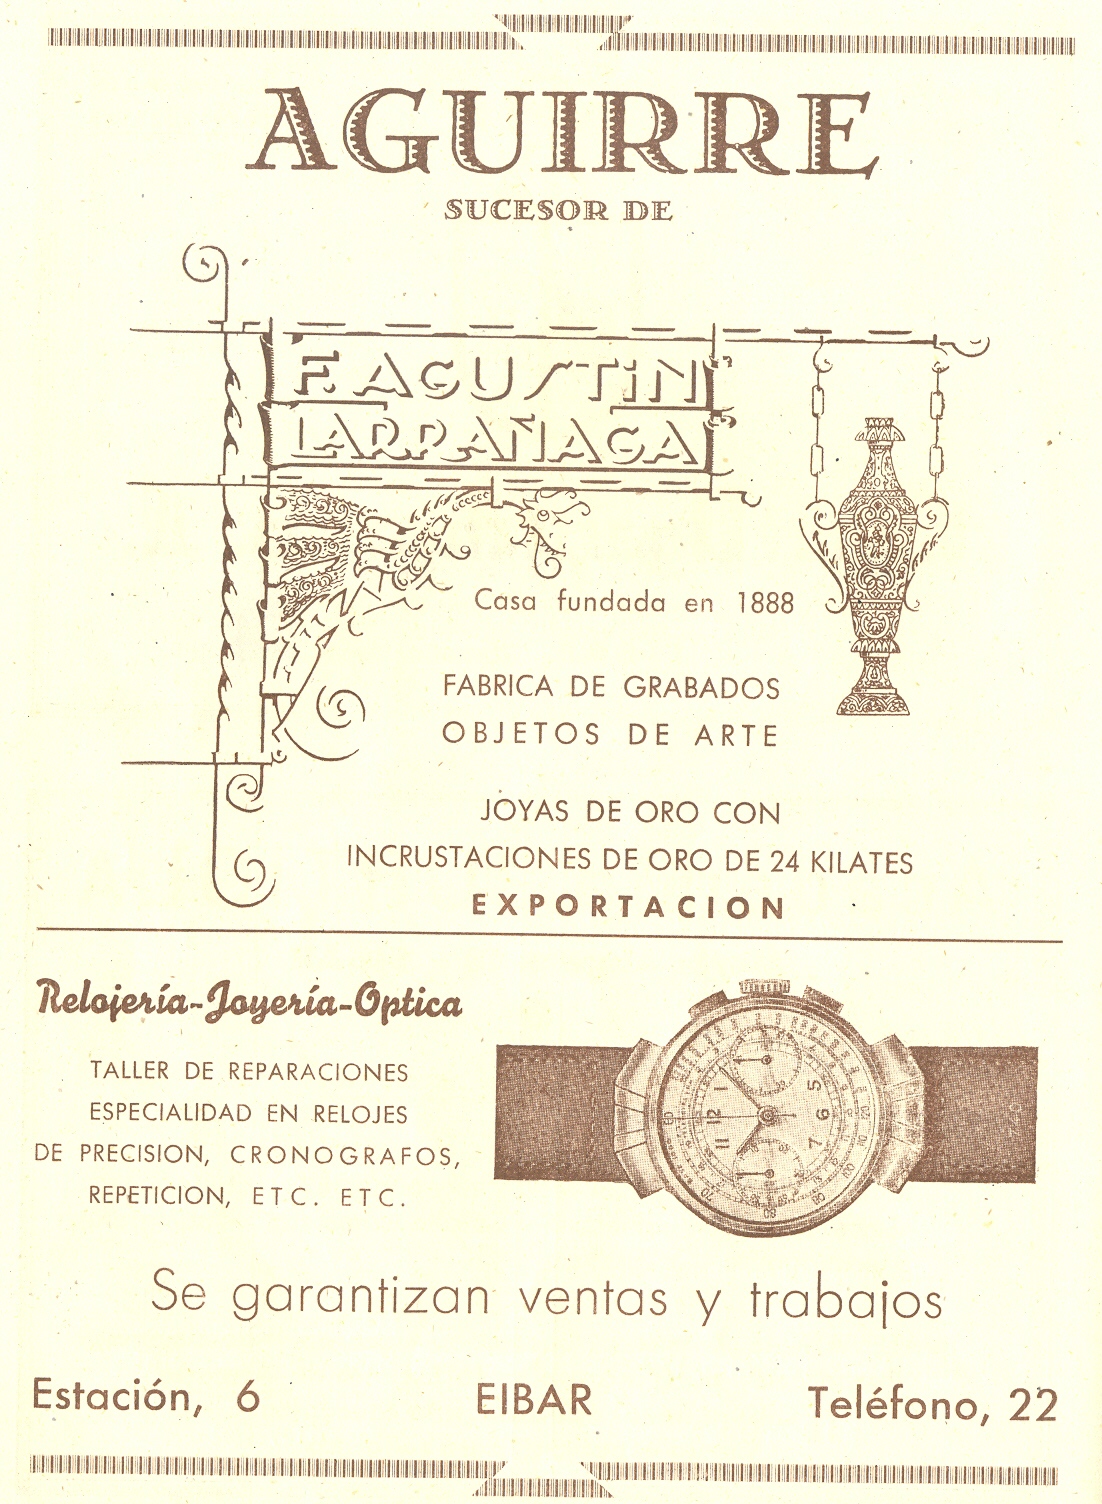 3) Aguirre relojería-joyería